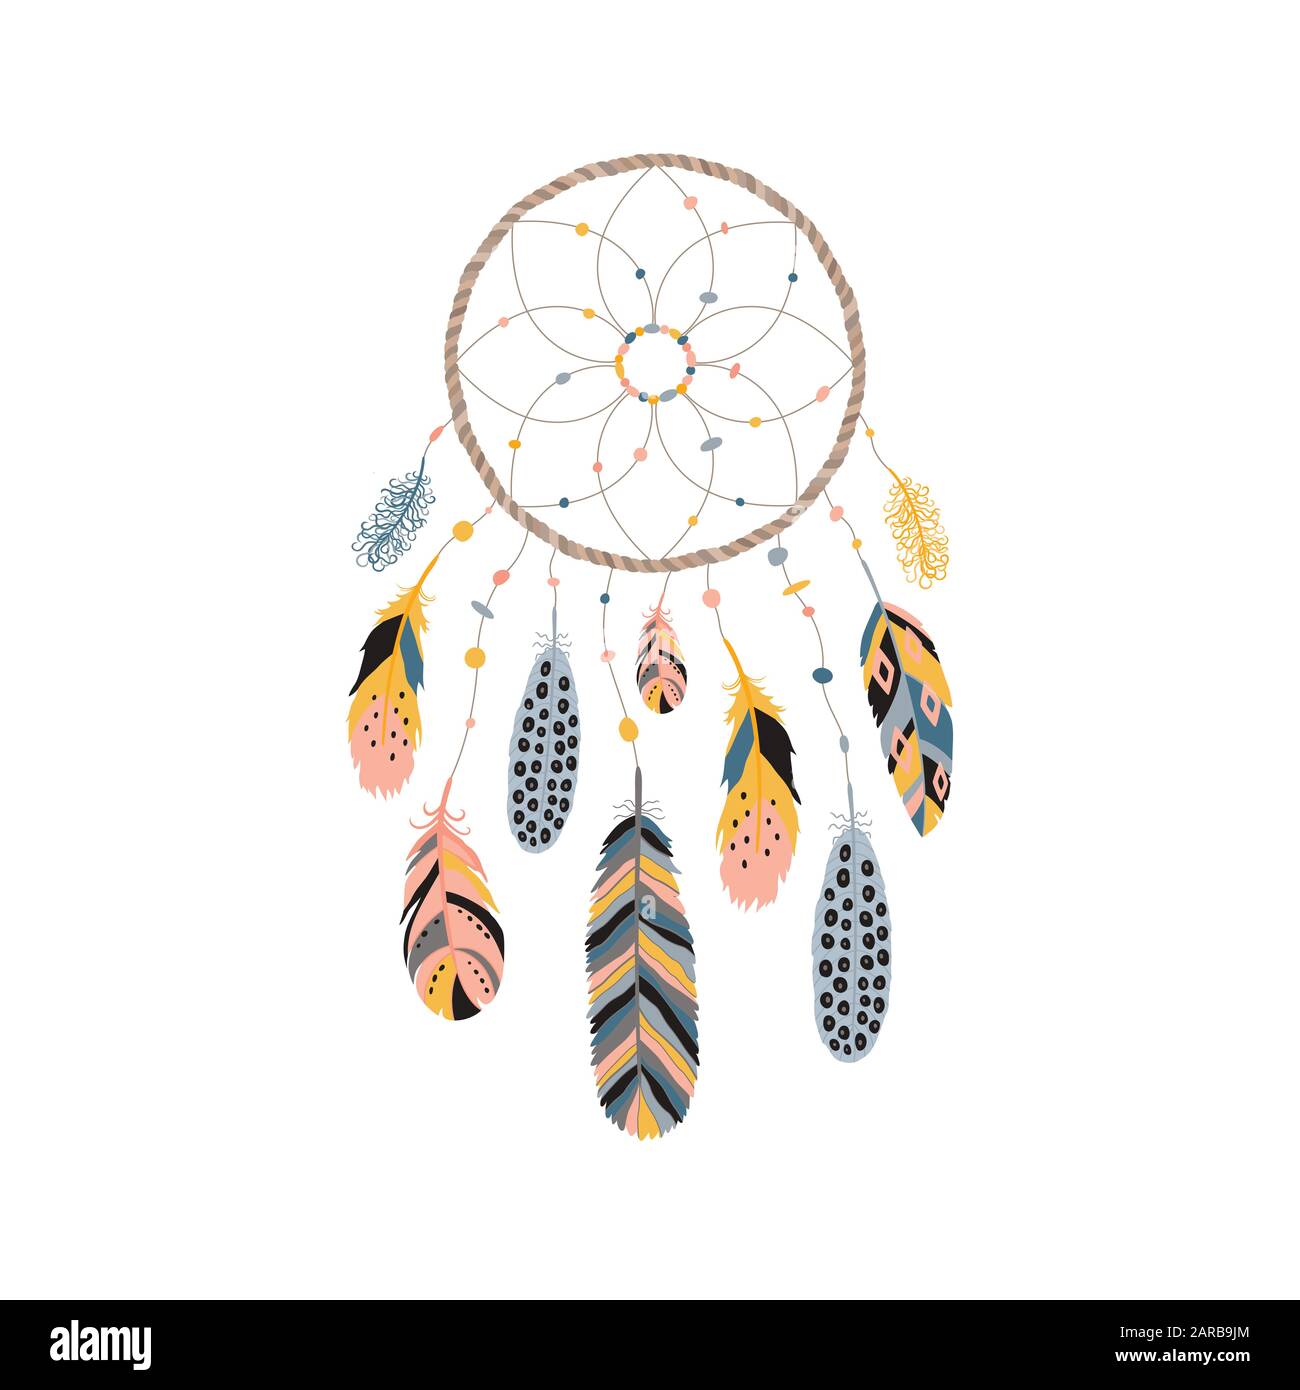 Traumfänger mit Federn, Juwelen und bunten Edelsteinen. Das Symbol für die Astrologie, Spiritualität. Ethnisches Stammeselement. Stock Vektor